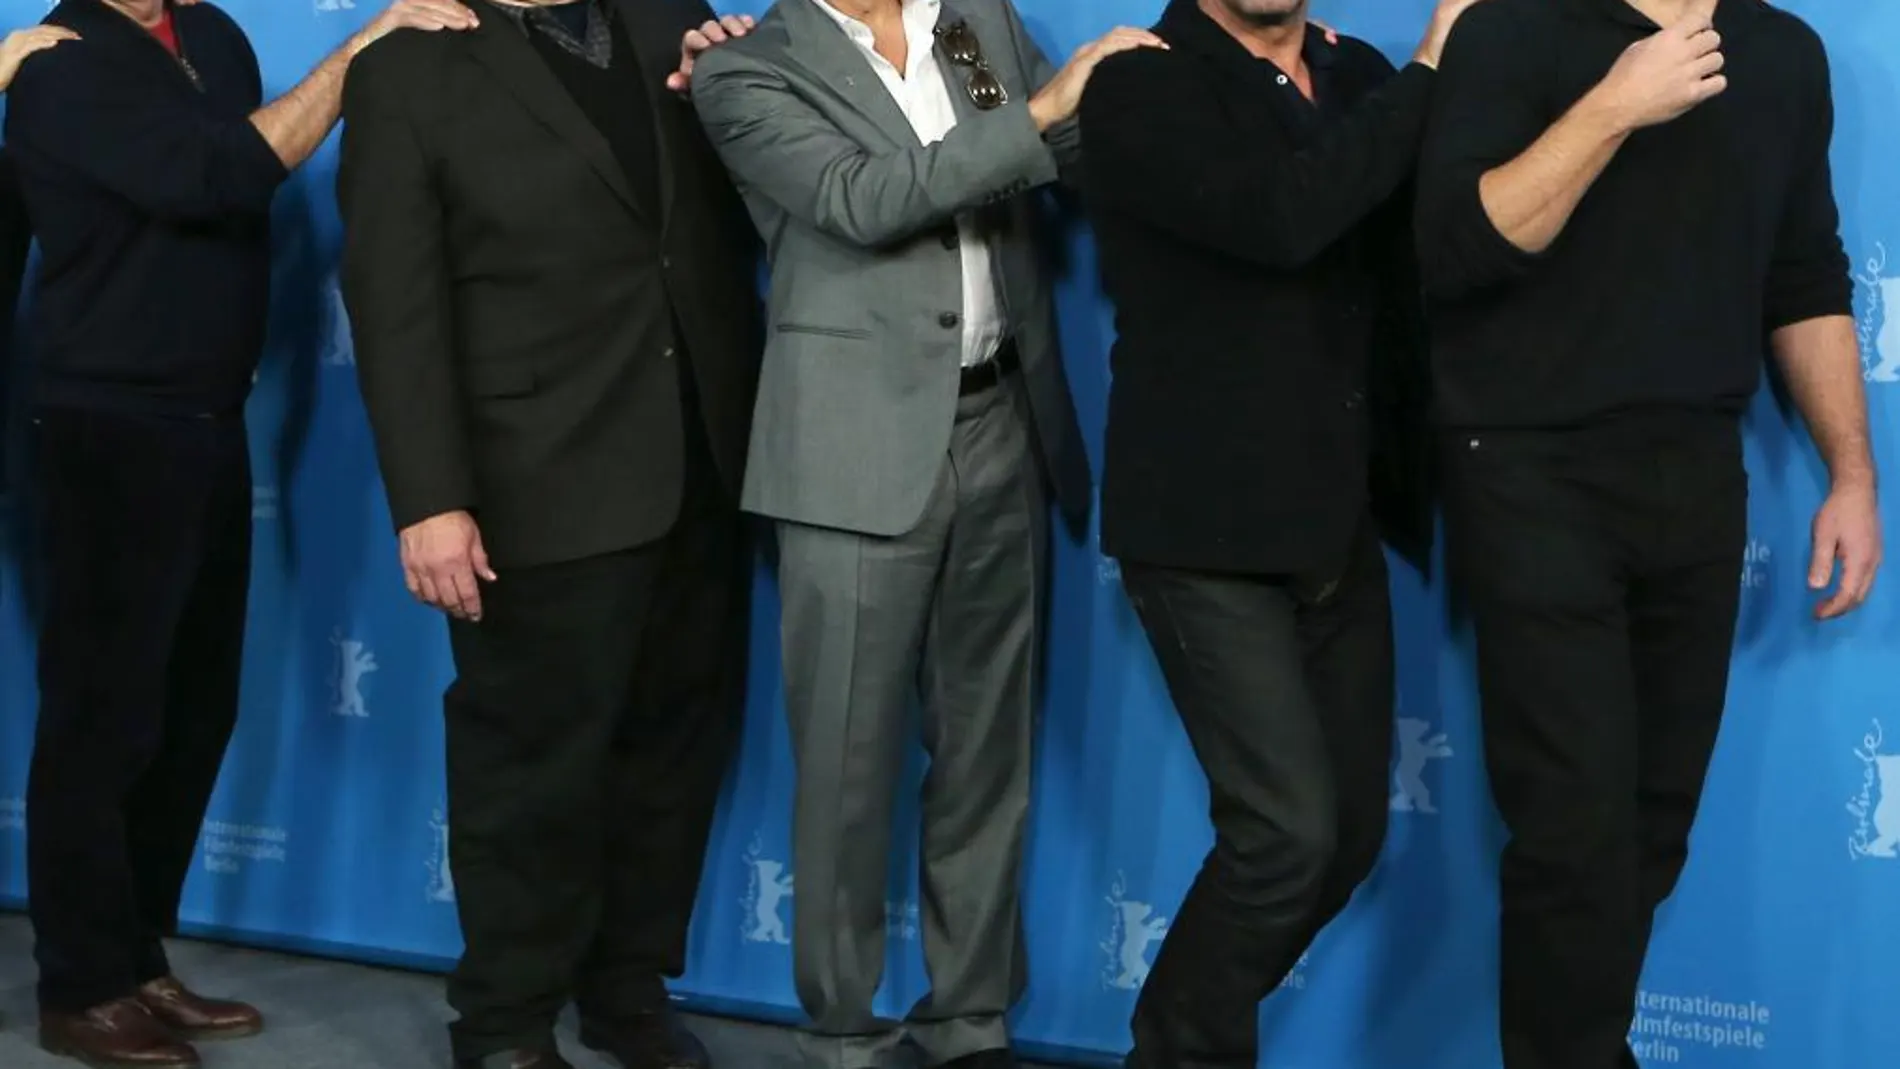 De izquierda a derecha, Bill Murray, John Goodman, George Clooney, Jean Dujardin y Matt Damon, durante la presentación de la película en la Berlinale.